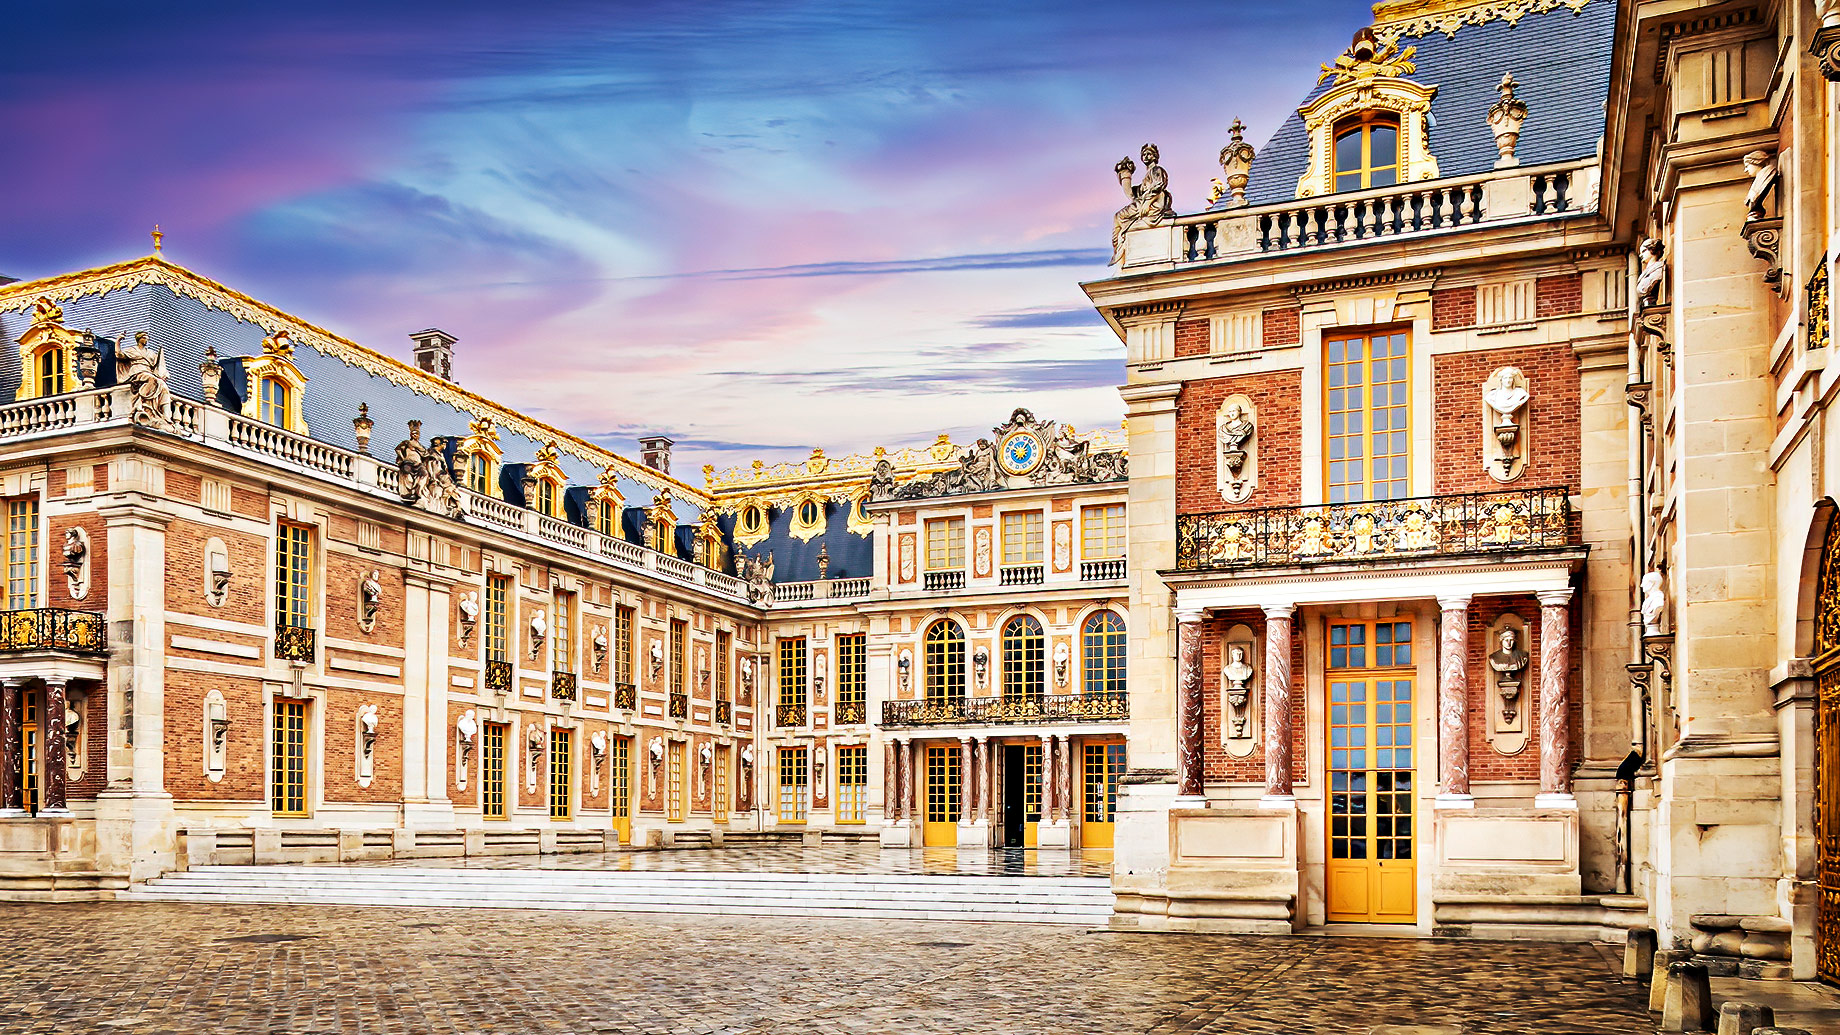 Palace of Versailles - Chambord, Loir-et-Cher, France